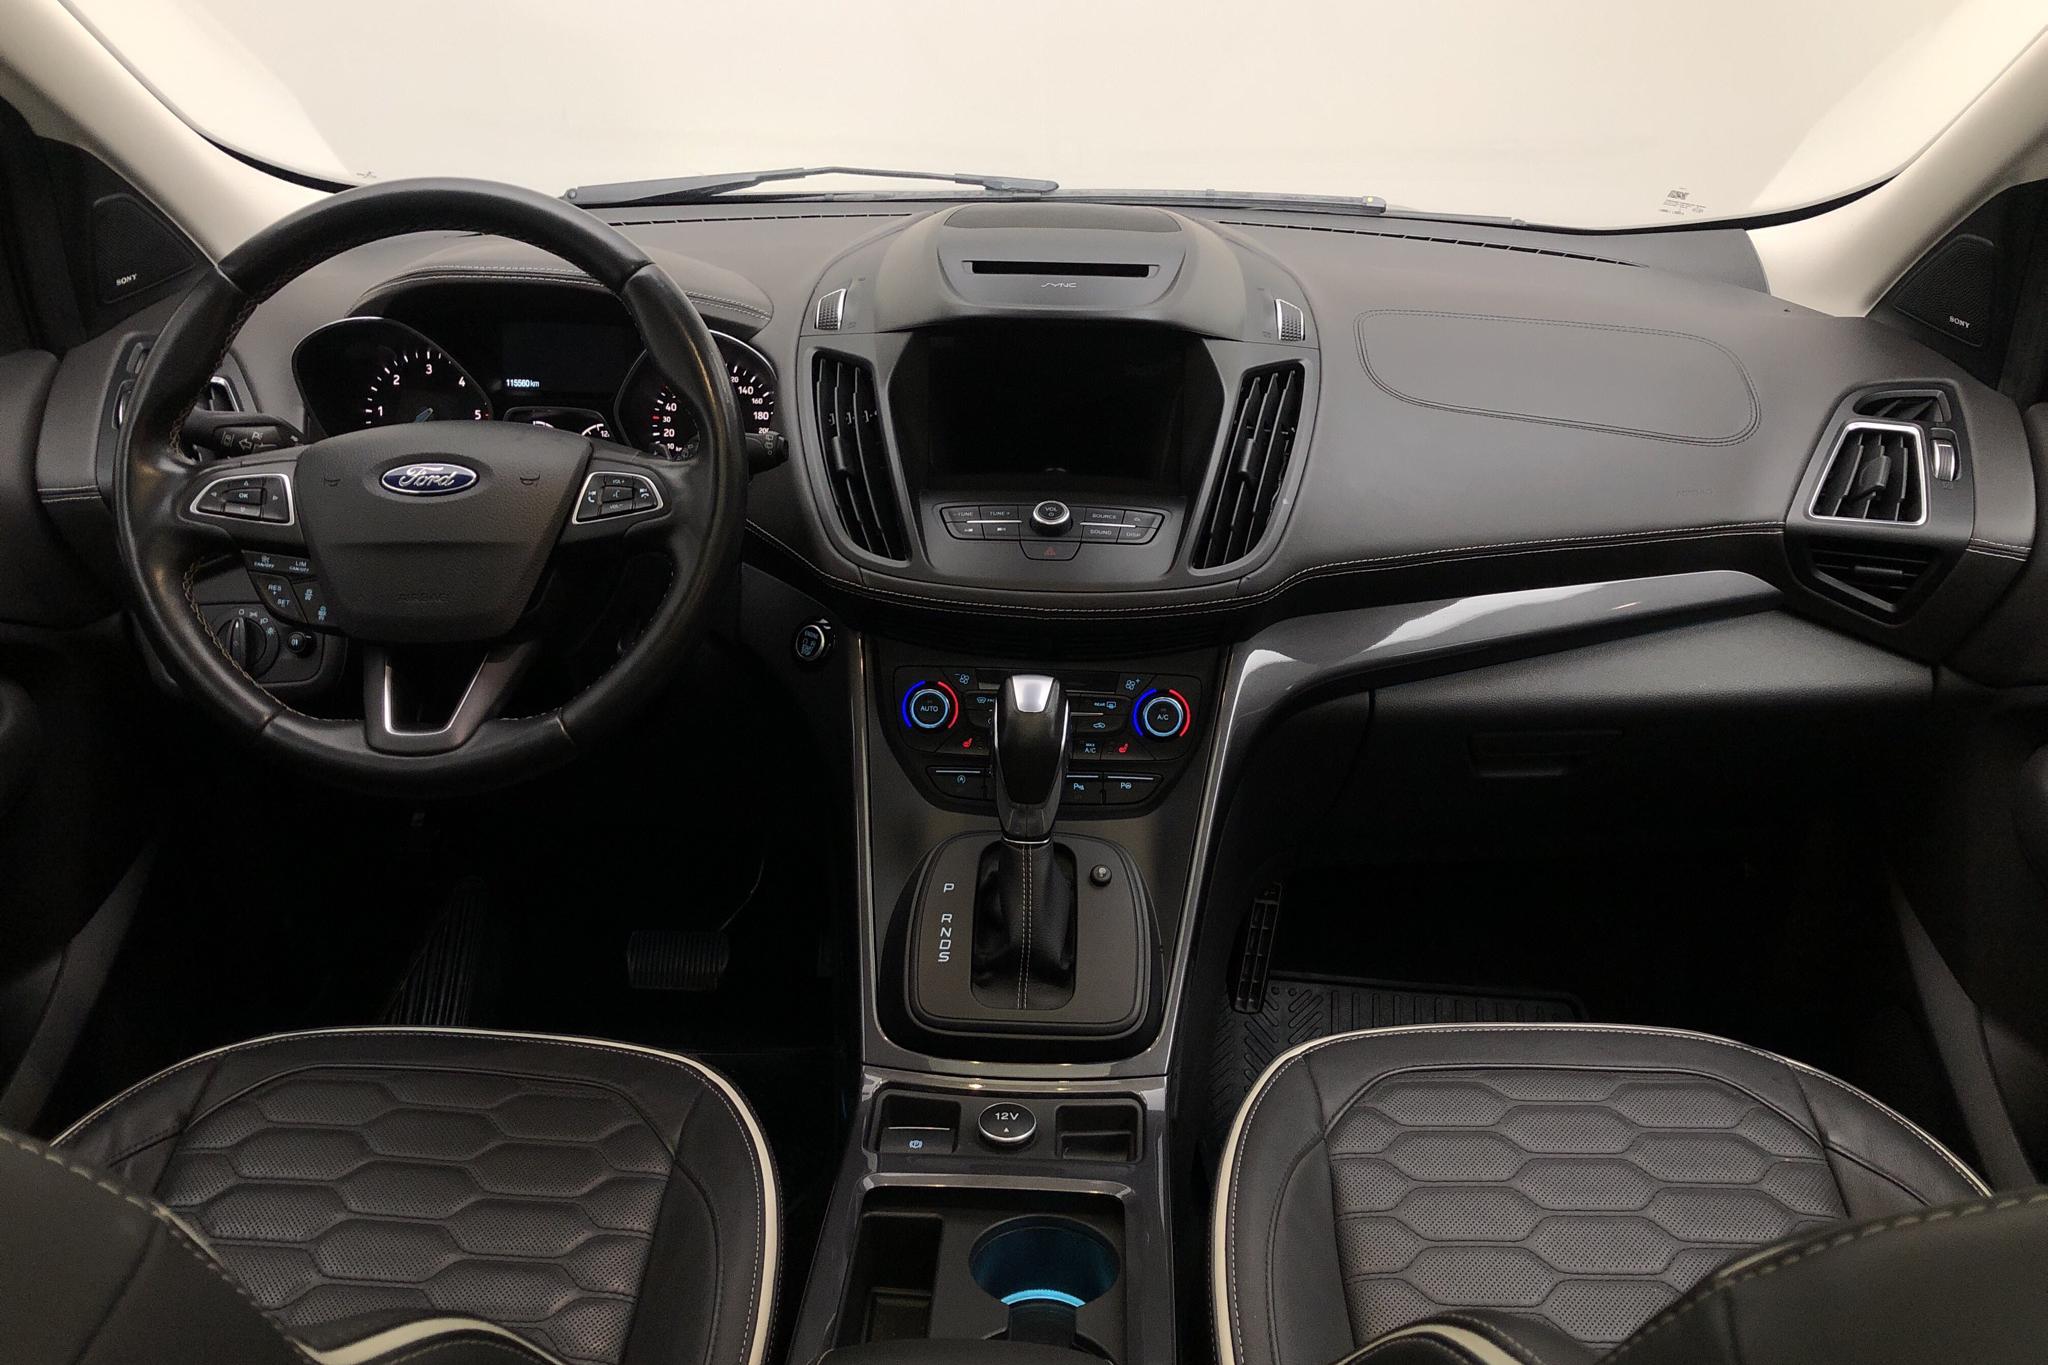 Ford Kuga 2.0 TDCi AWD (180hk) - 115 570 km - Automatic - gray - 2018